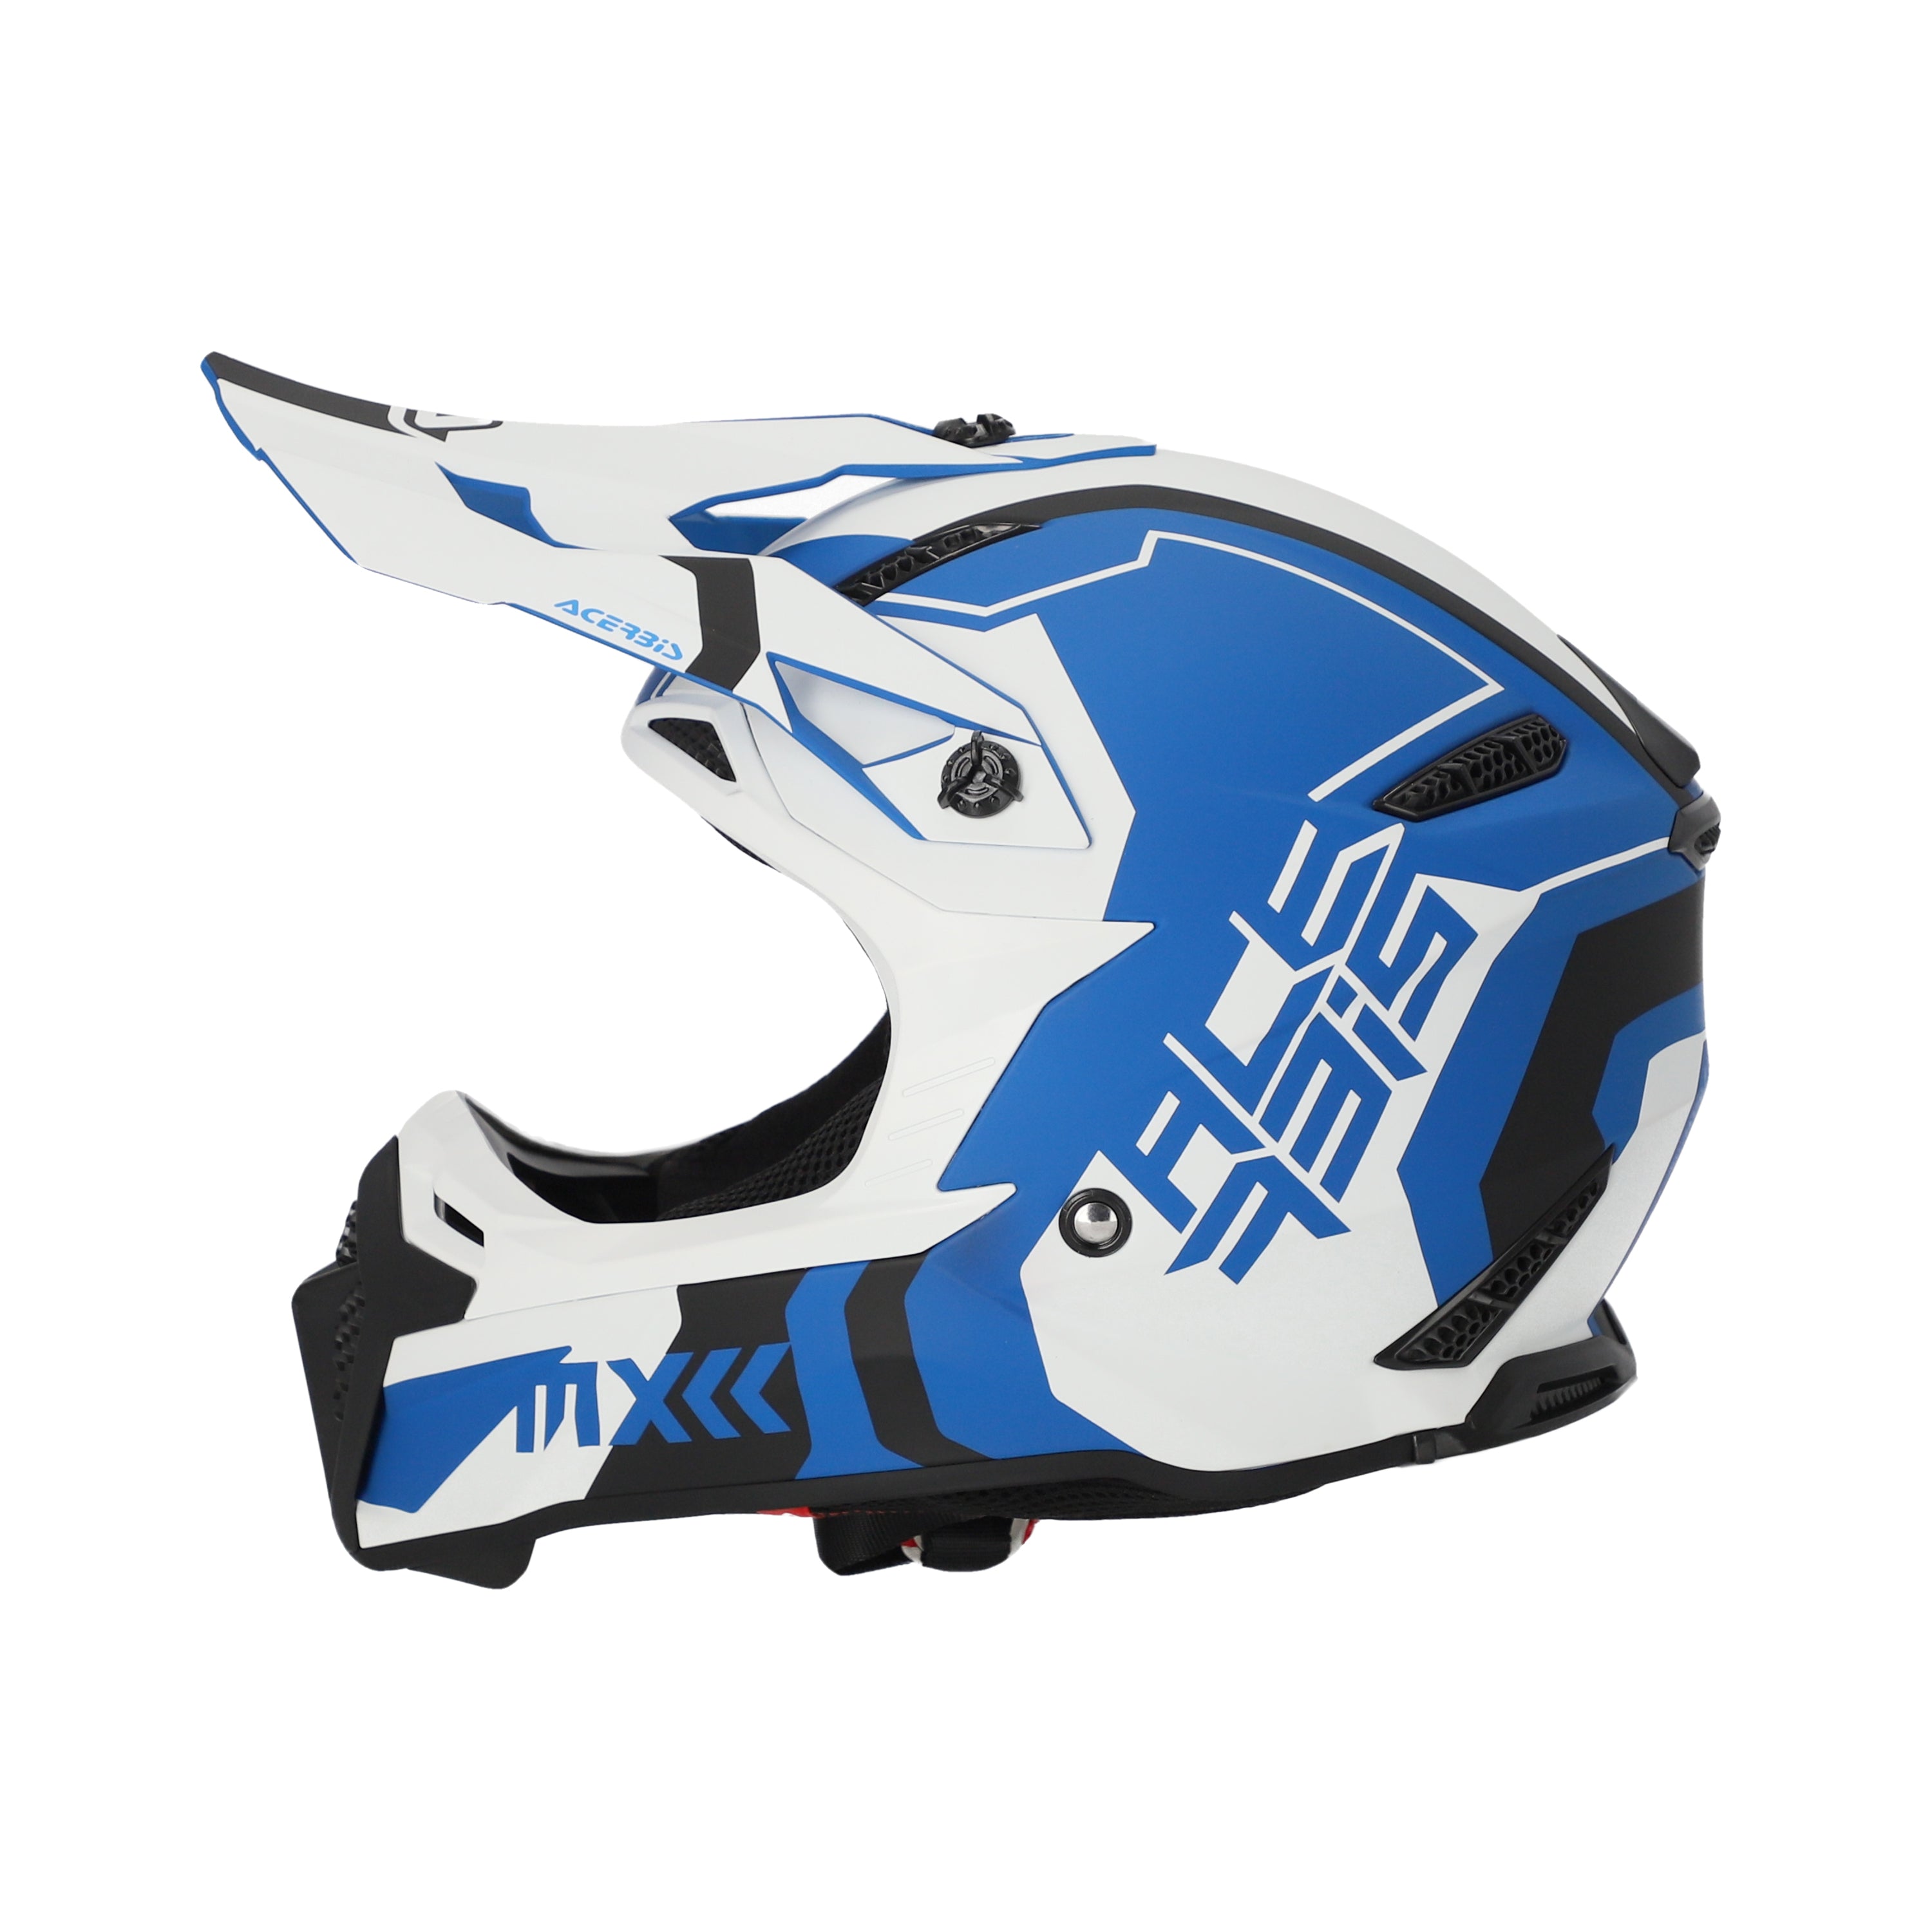 Acerbis Profile 5 MX Helmet Matte White/Blue